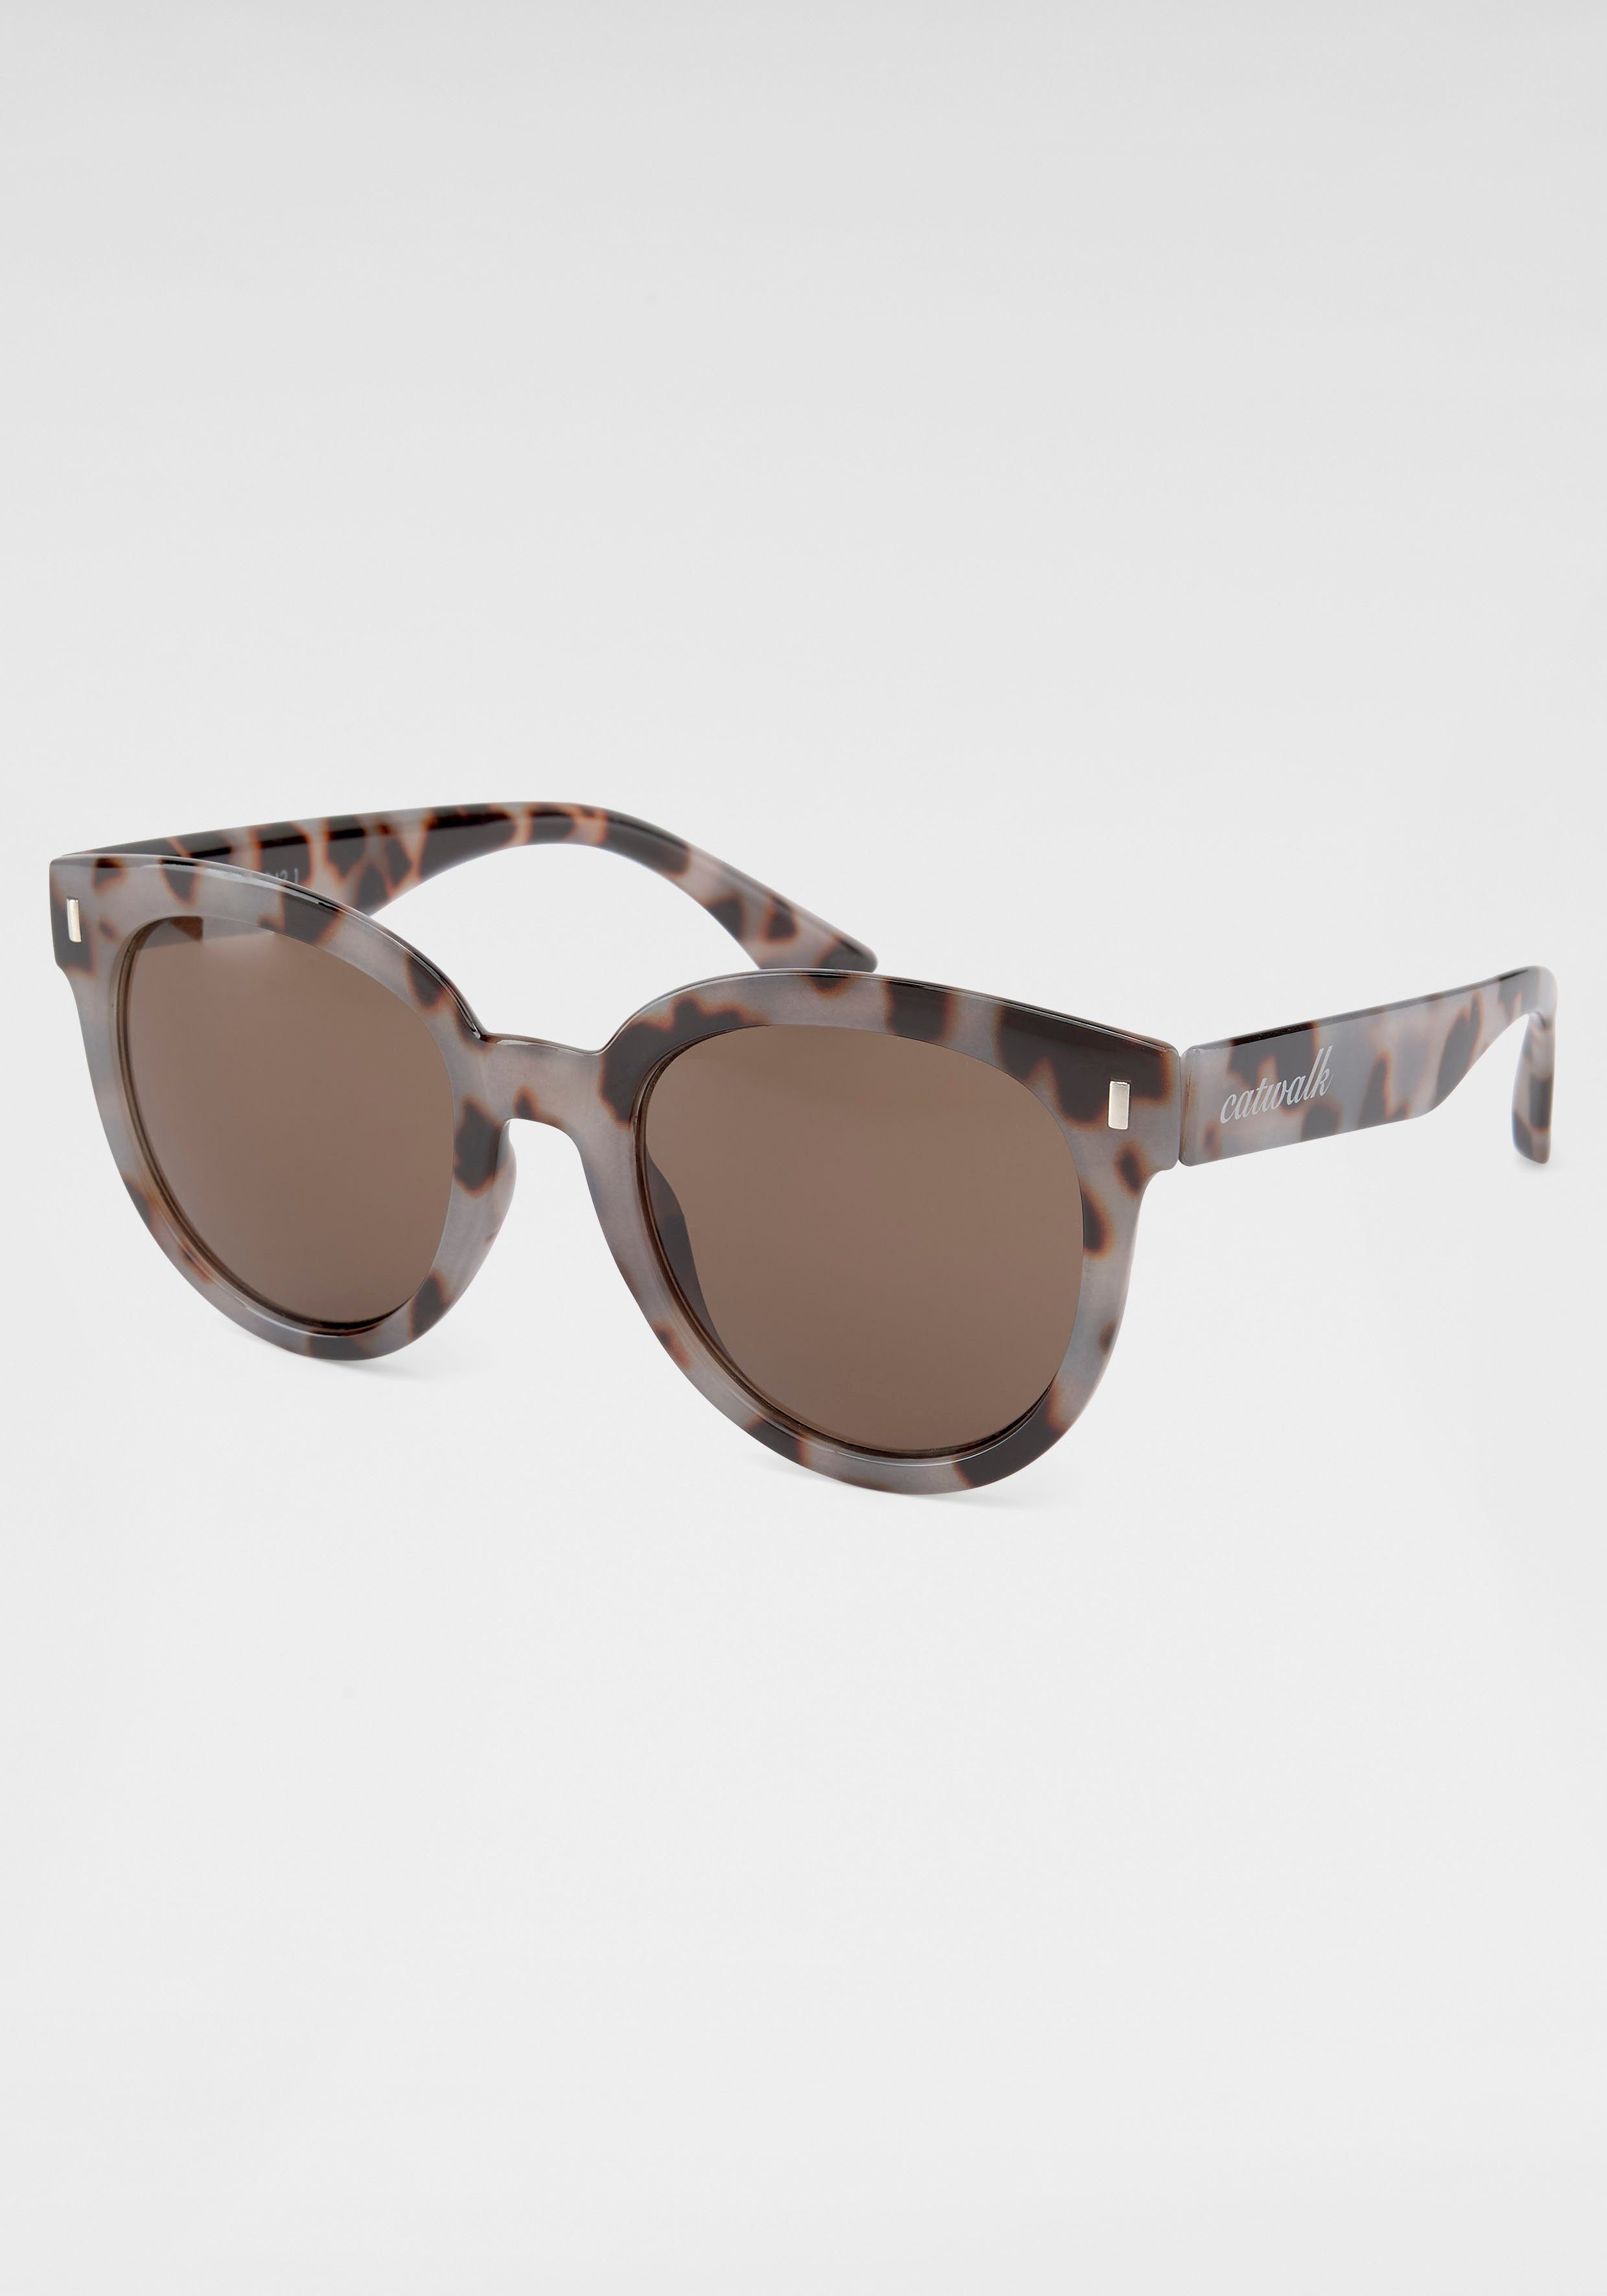 catwalk Eyewear Sonnenbrille, Angenehm leicht online kaufen | OTTO